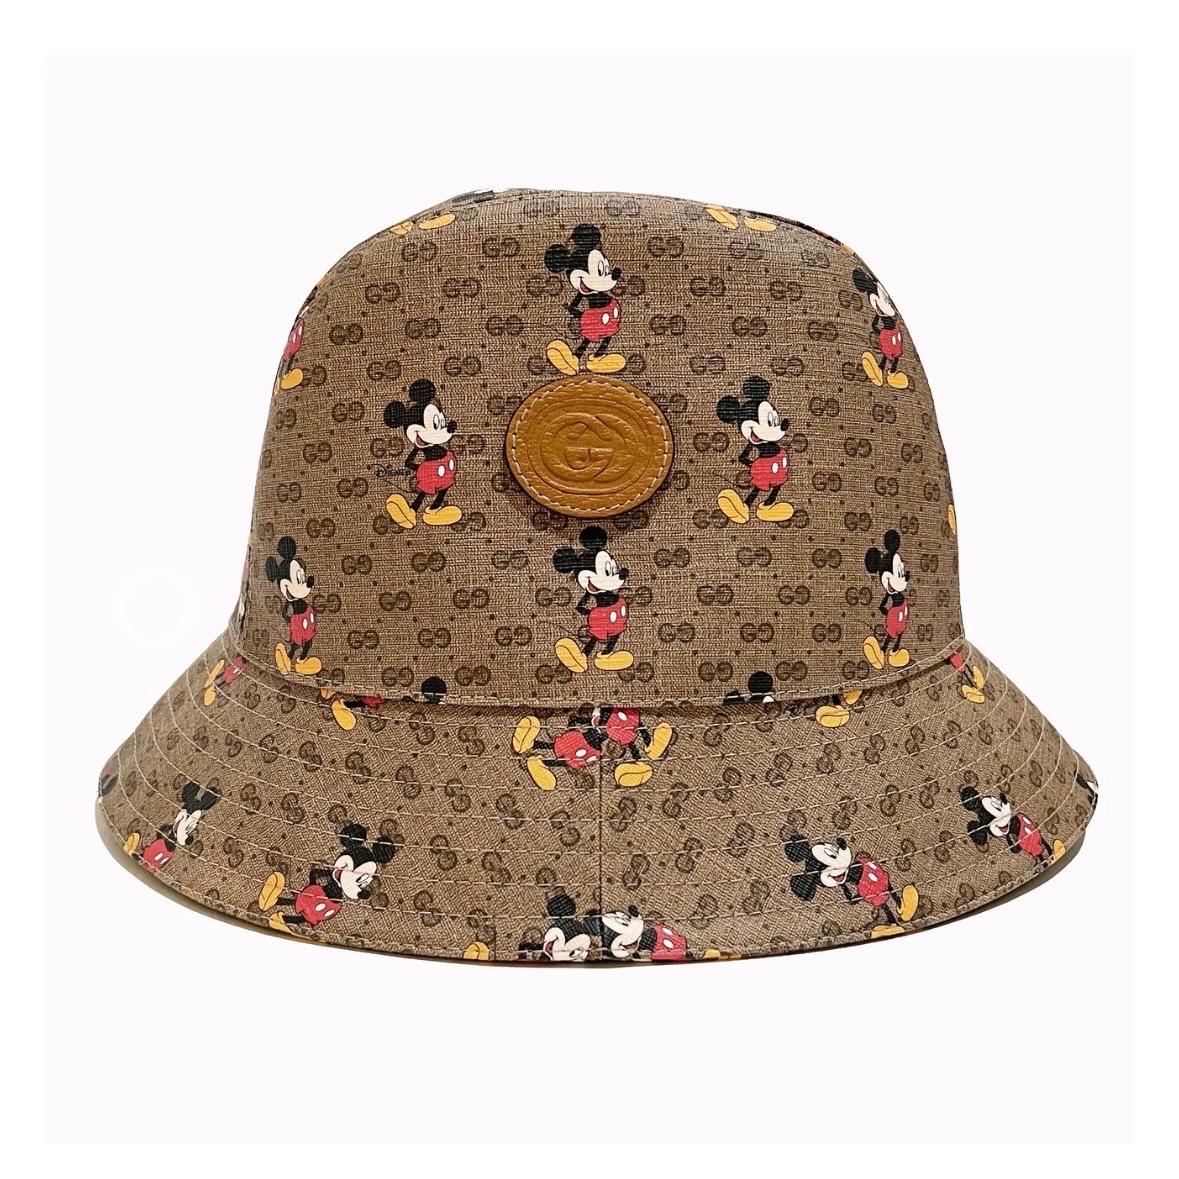 Mickey Monogram Bucket Hat von Disney X Gucci
Frühjahr/Sommer 2020
Hergestellt in Italien
Braun mit durchgehendem Gucci-Monogramm im Vintage-Look 
Durchgehend mit Mickey Mouse-Grafik durchsetzt 
Ineinandergreifendes G Gucci-Logo auf Lederaufnäher